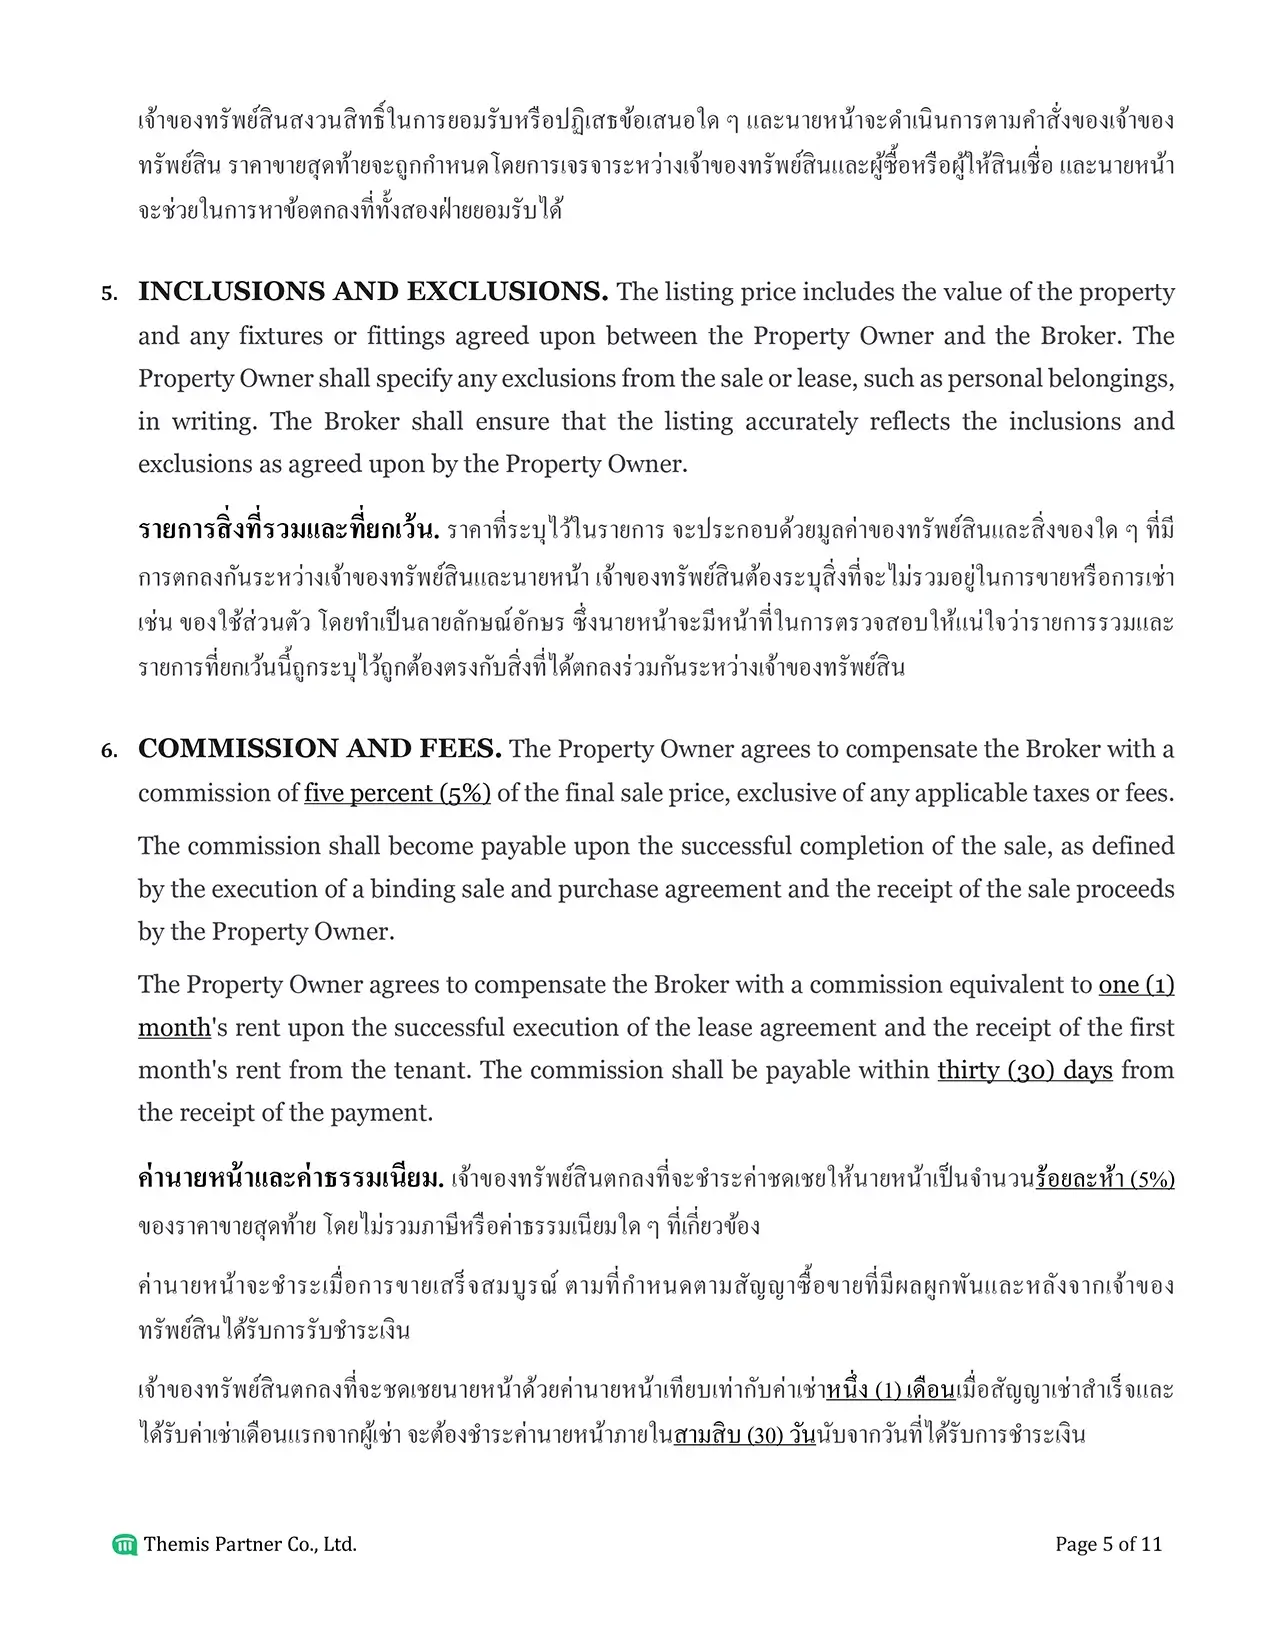 Brokerage agreement Thailand 5